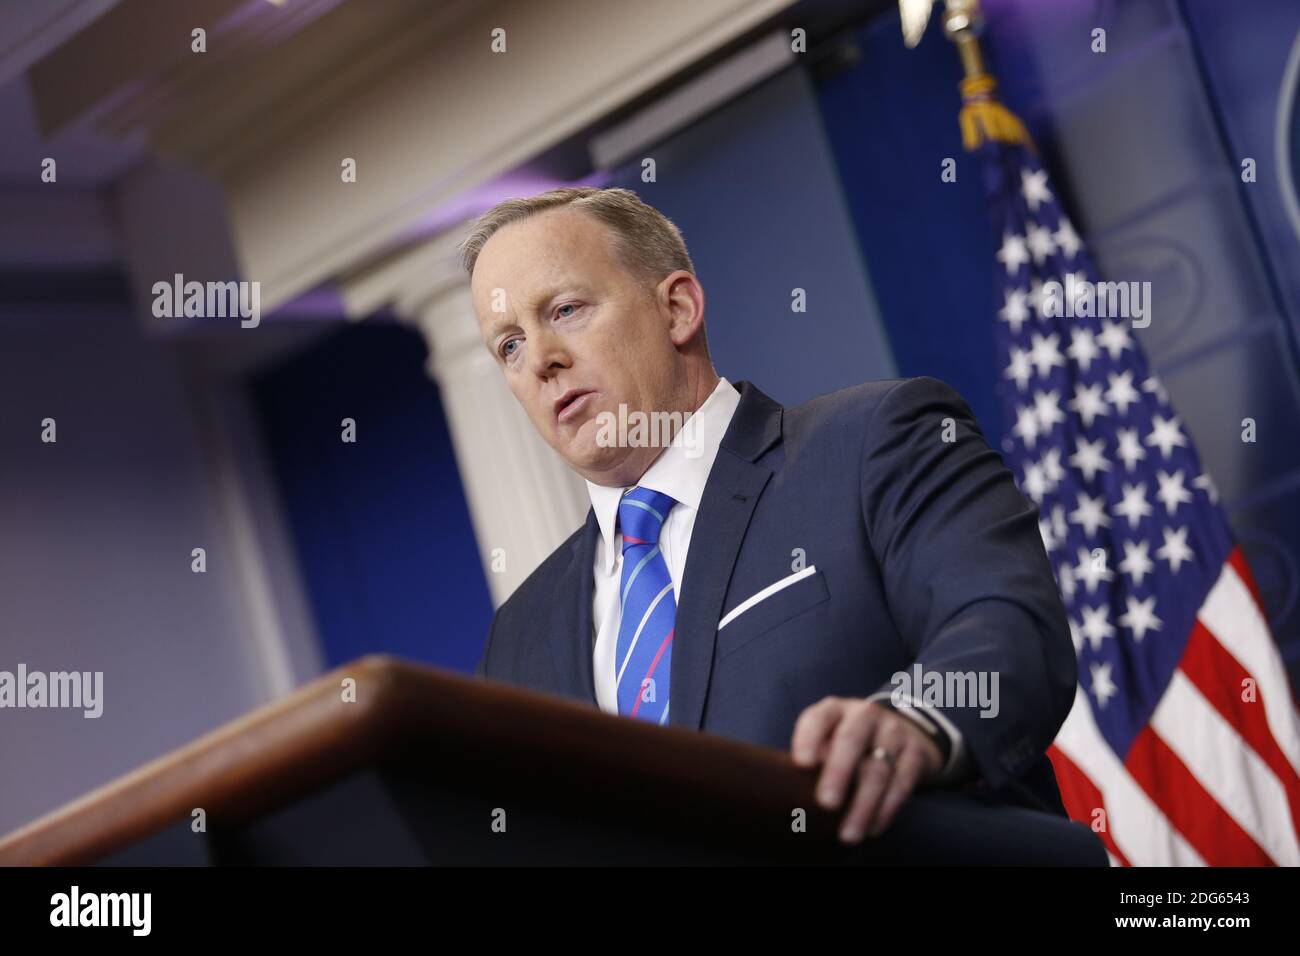 Sean Spicer, attaché de presse, parle lors d'un point de presse à la Maison Blanche, Washington, DC, le 27 février 2017. (Polaris / Aude Guerrucci) Banque D'Images